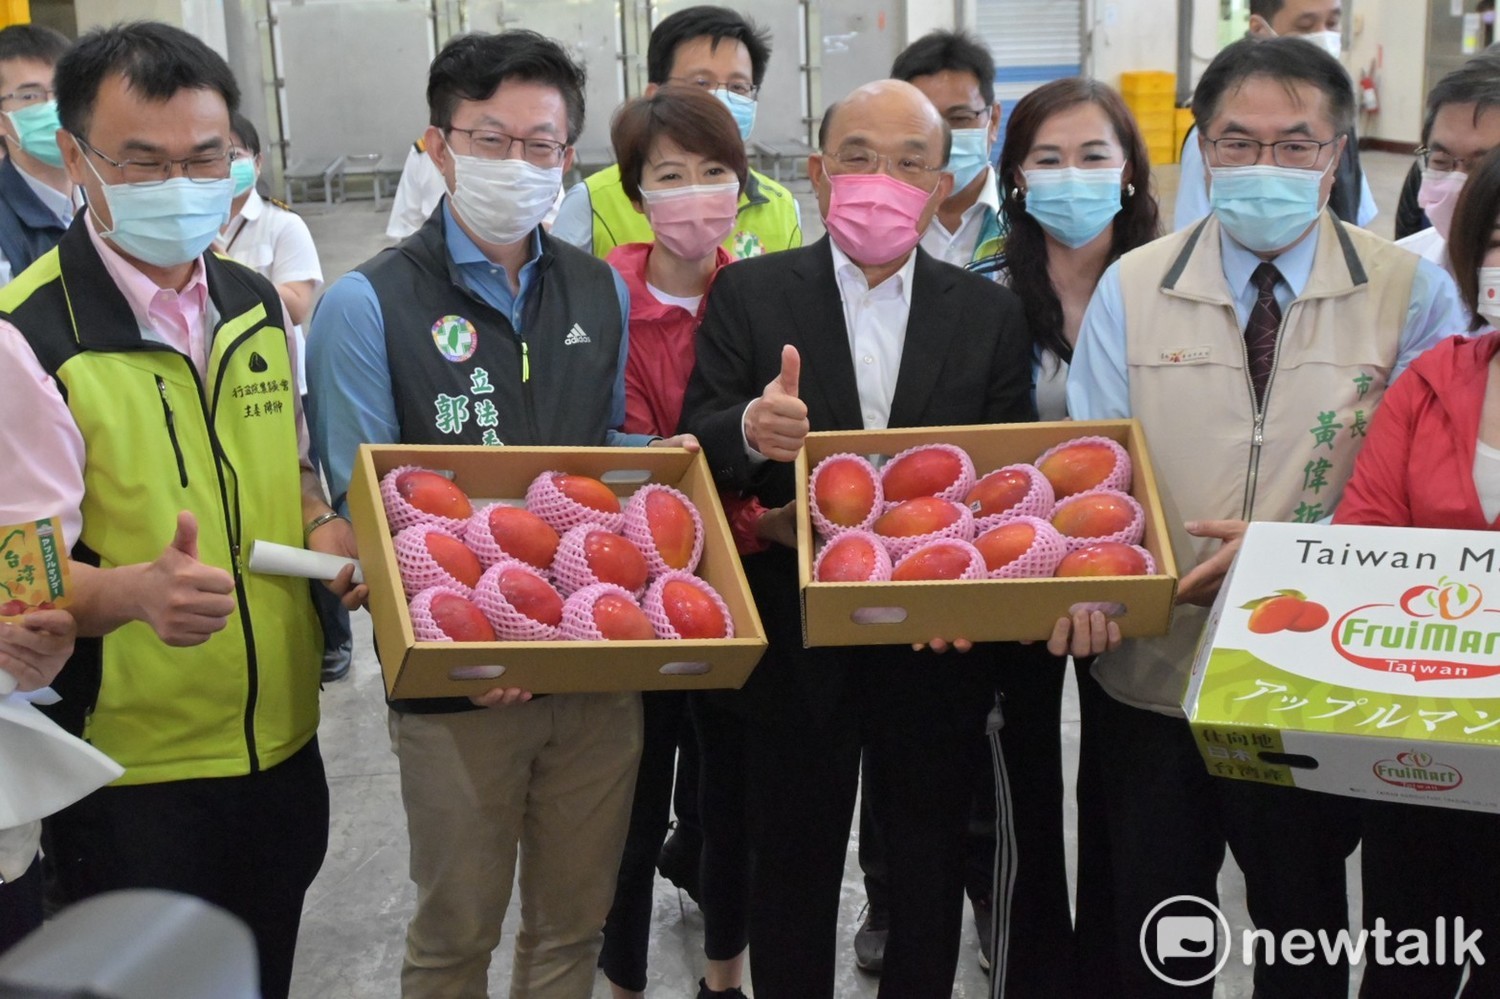 協助水果產銷 蘇貞昌允諾冷鏈物流中心5.6億經費儘速辦理